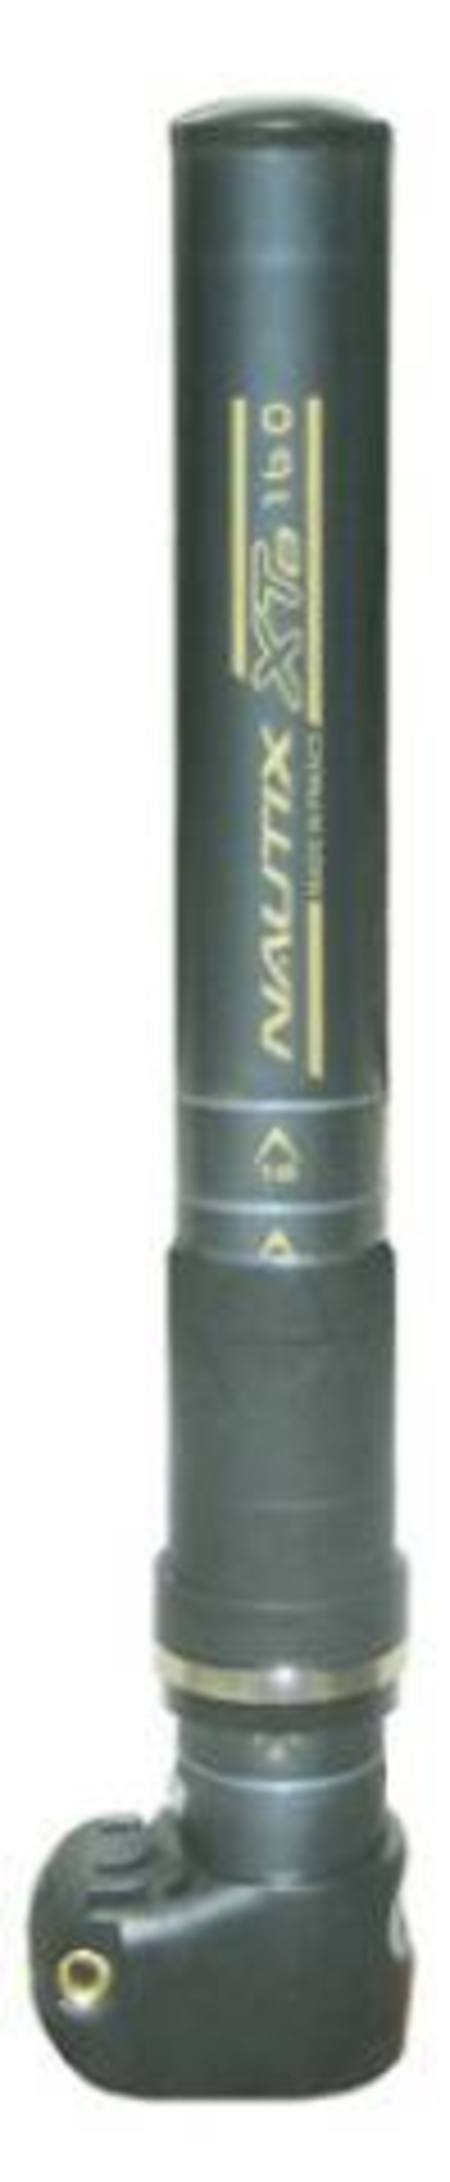 Buy Nautix Mast Ext 160 For Axle in NZ. 